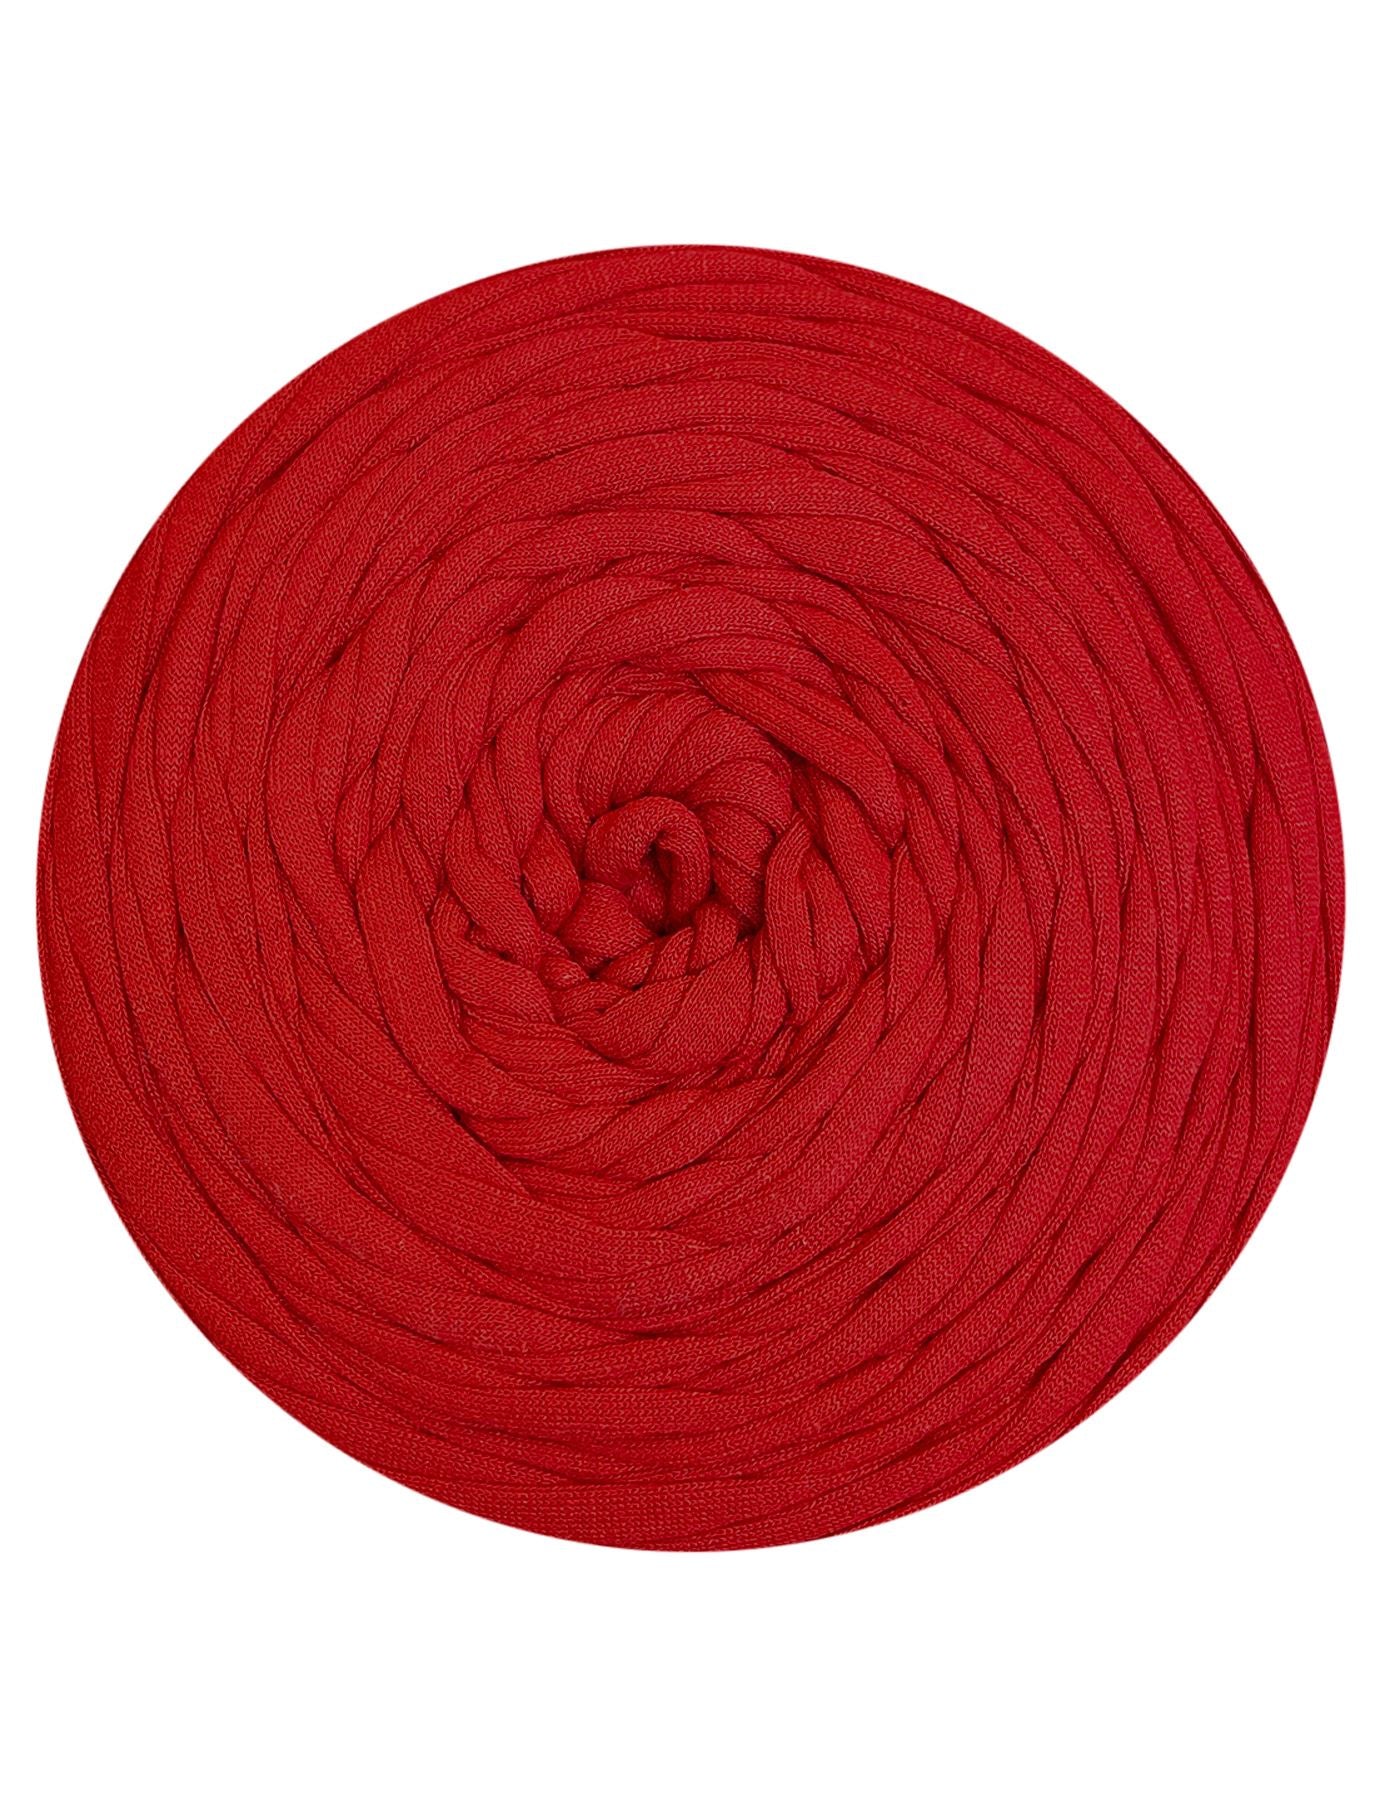 Apple red t-shirt yarn by Rescue Yarn (100-120m)